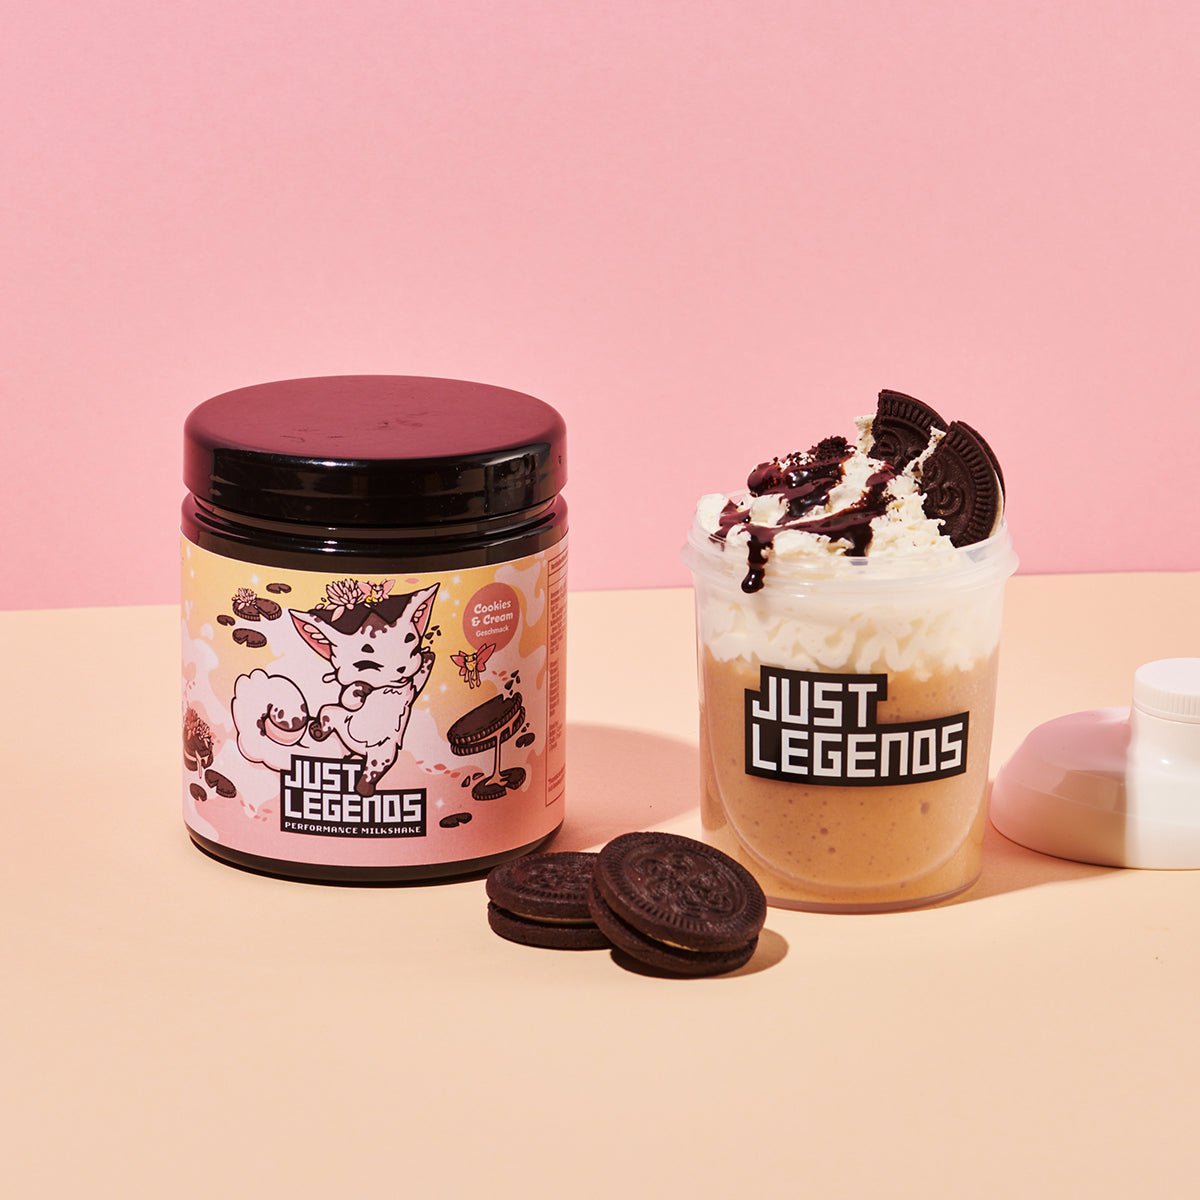 Just Legends Performance Milkshake Cookies & Cream | Funktionaler, veganer Performance Milkshake auf Pulverbasis ohne Zucker, mit wenig Kalorien, vielen Vitaminen und natürlichen Aromen.